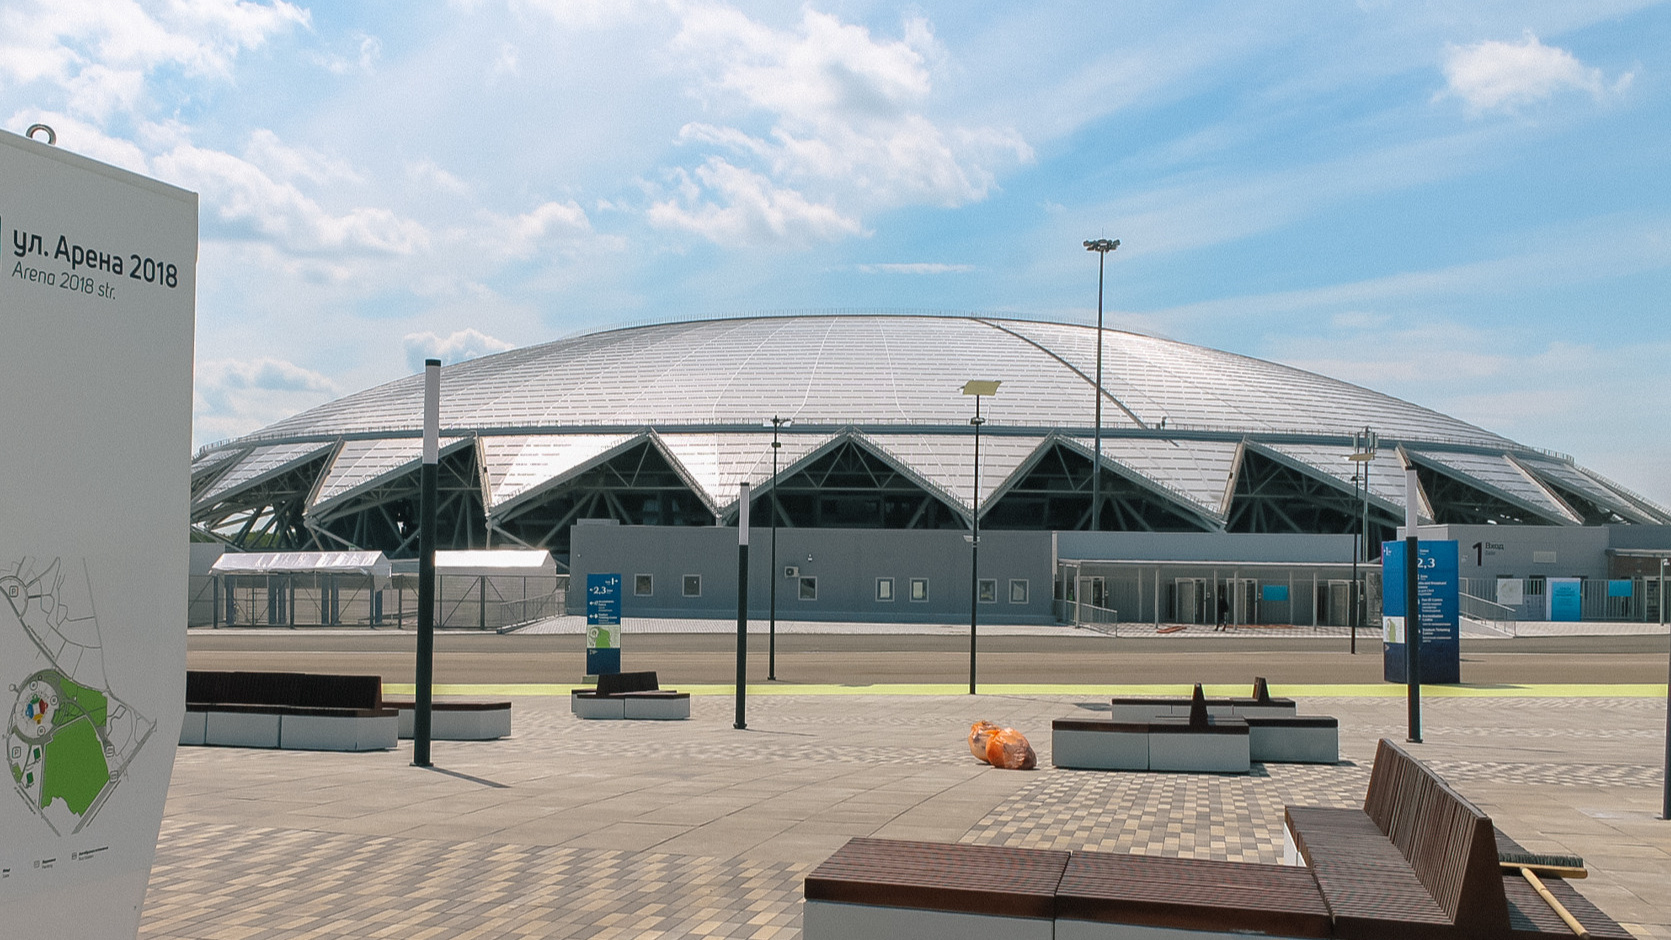 Компания Ушамирского купит парковку около стадиона «Солидарность Арена»